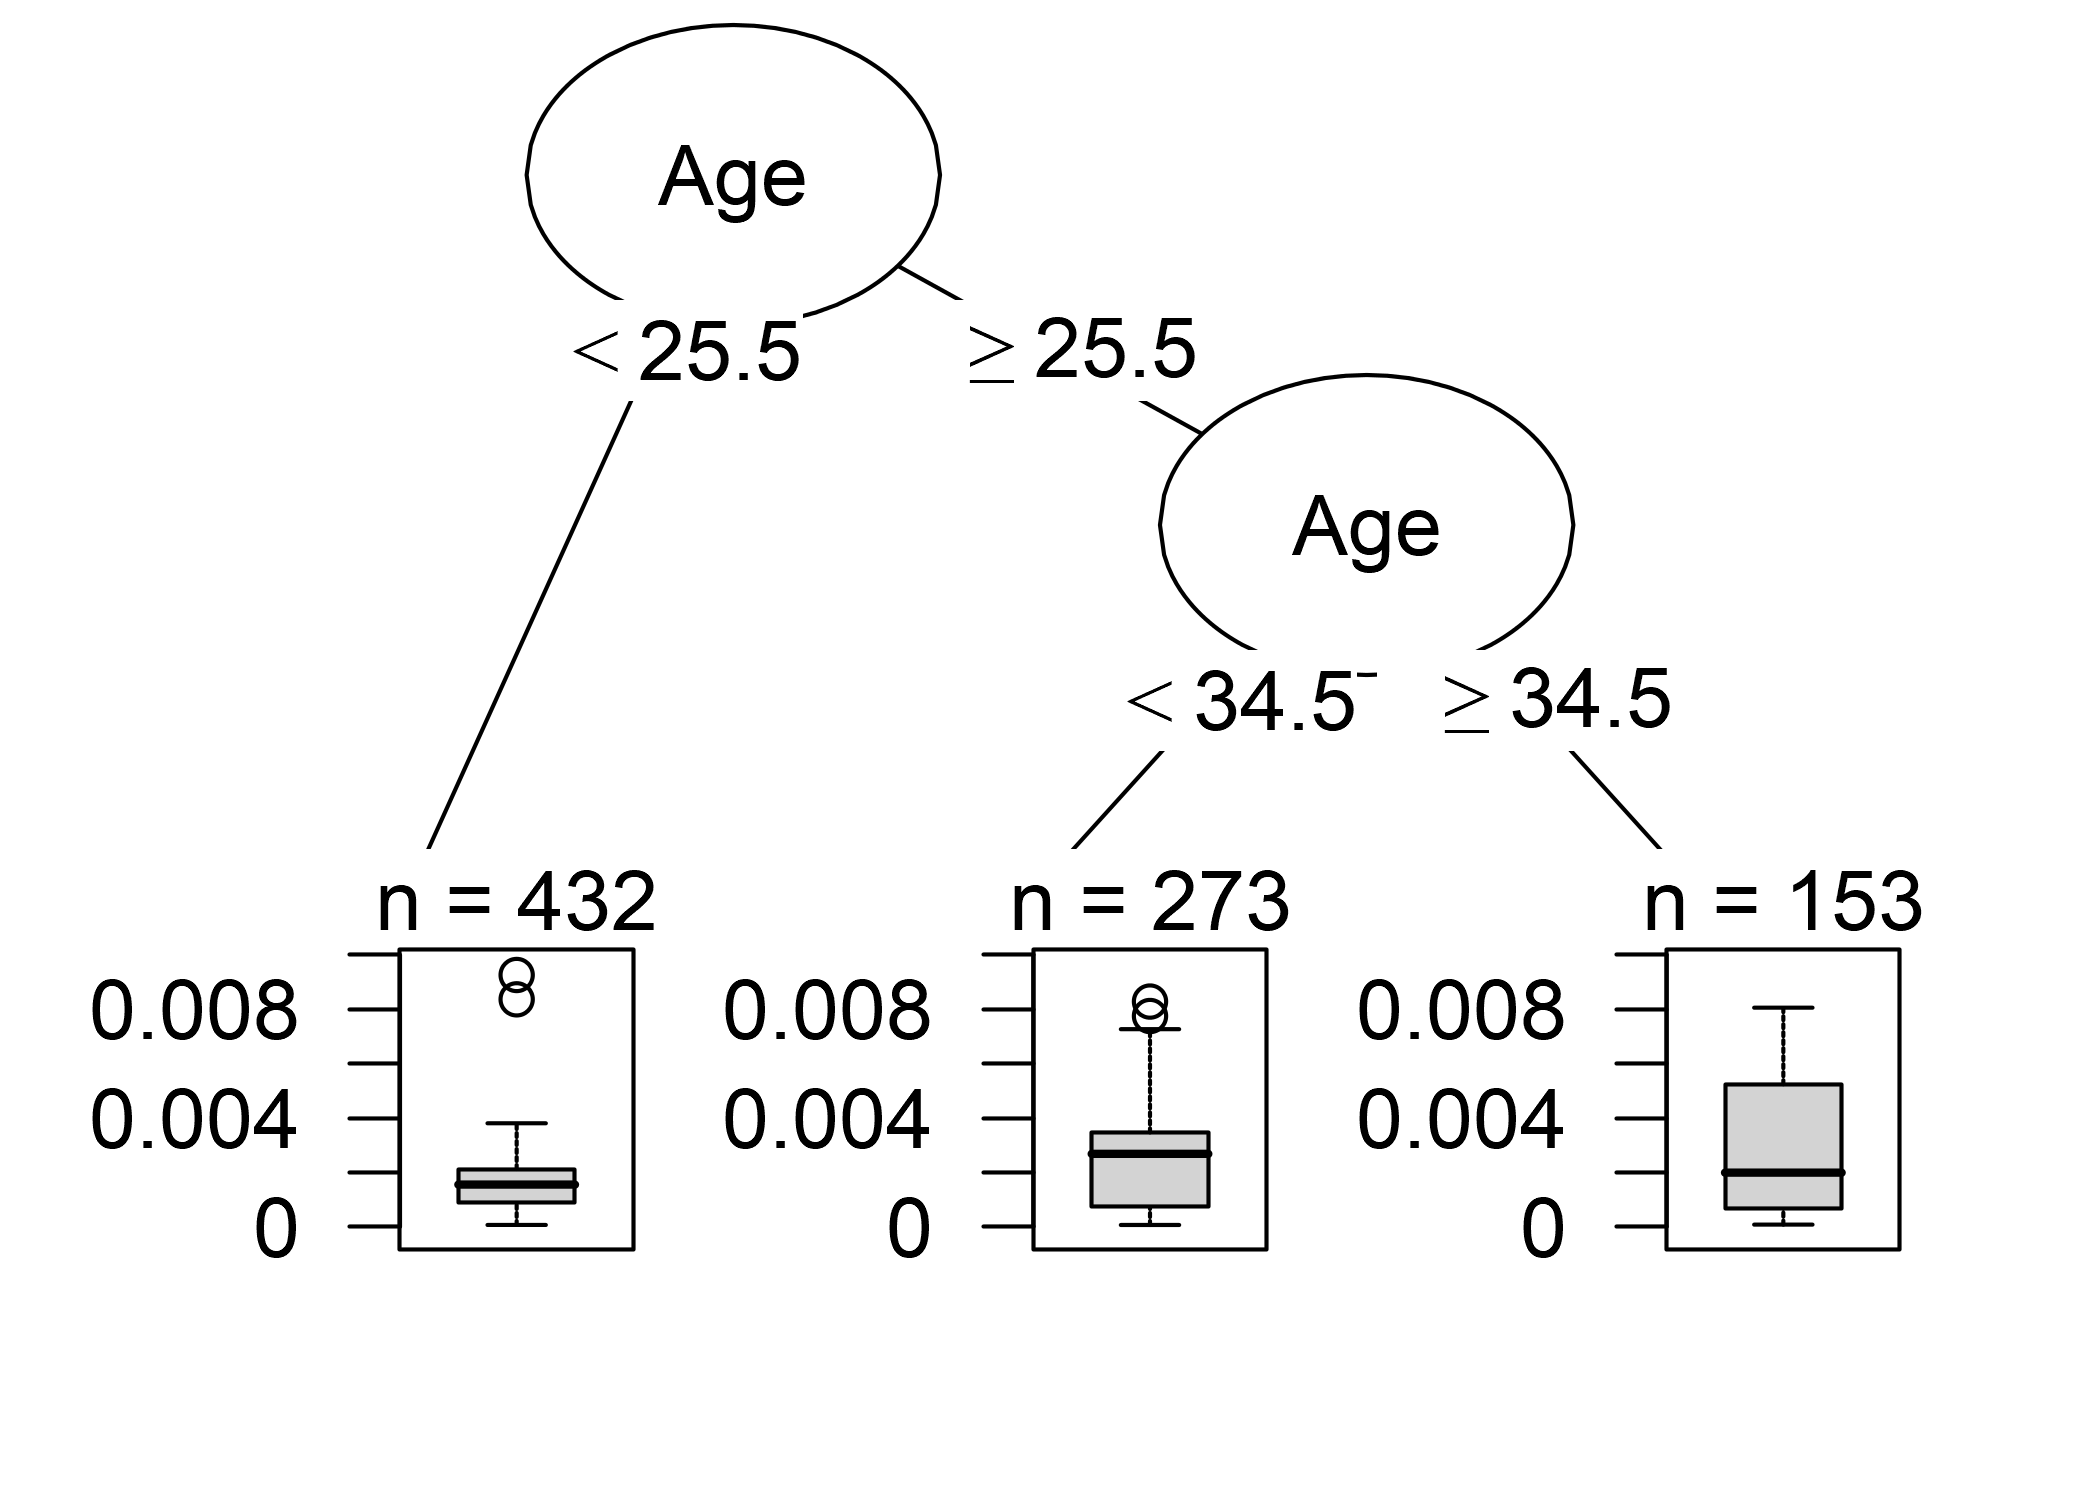 Un árbol de decisión que modela la relación entre la influencia de las instancias y sus características. La profundidad máxima del árbol se establece en 2.